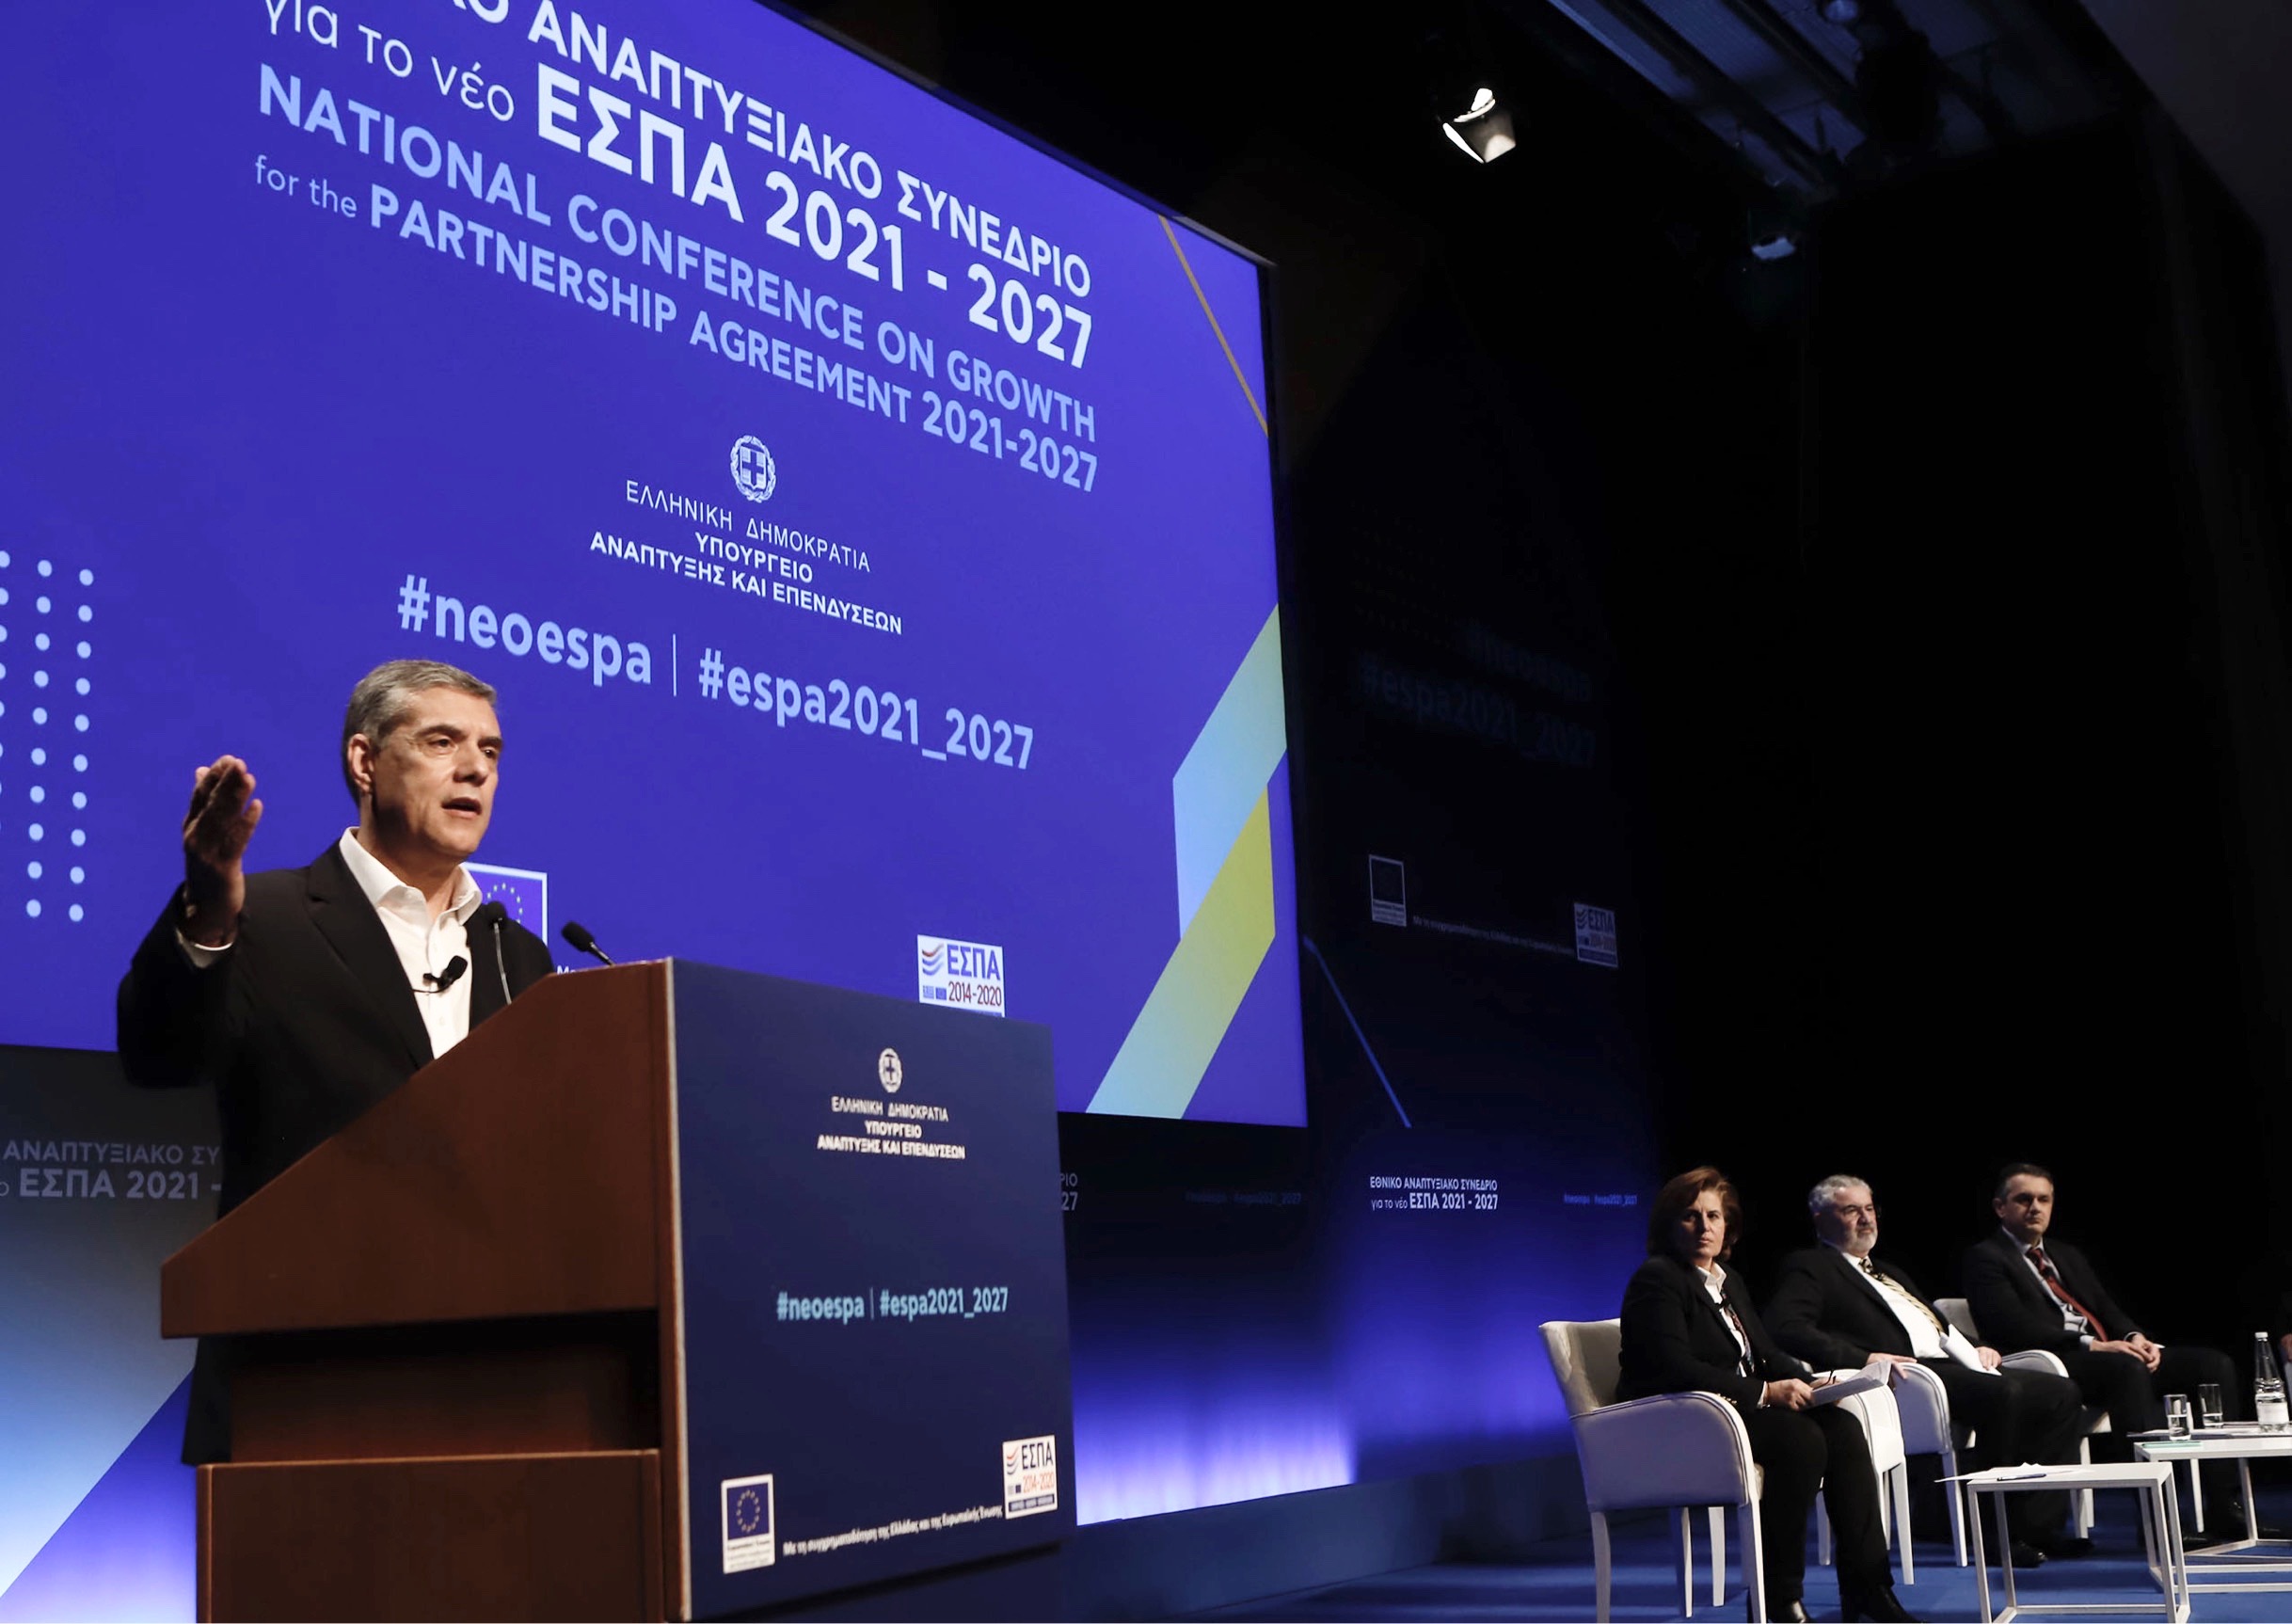 Ο Περιφερειάρχης Θεσσαλίας στο Εθνικό Αναπτυξιακό Συνέδριο για το νέο ΕΣΠΑ 2021 -2027